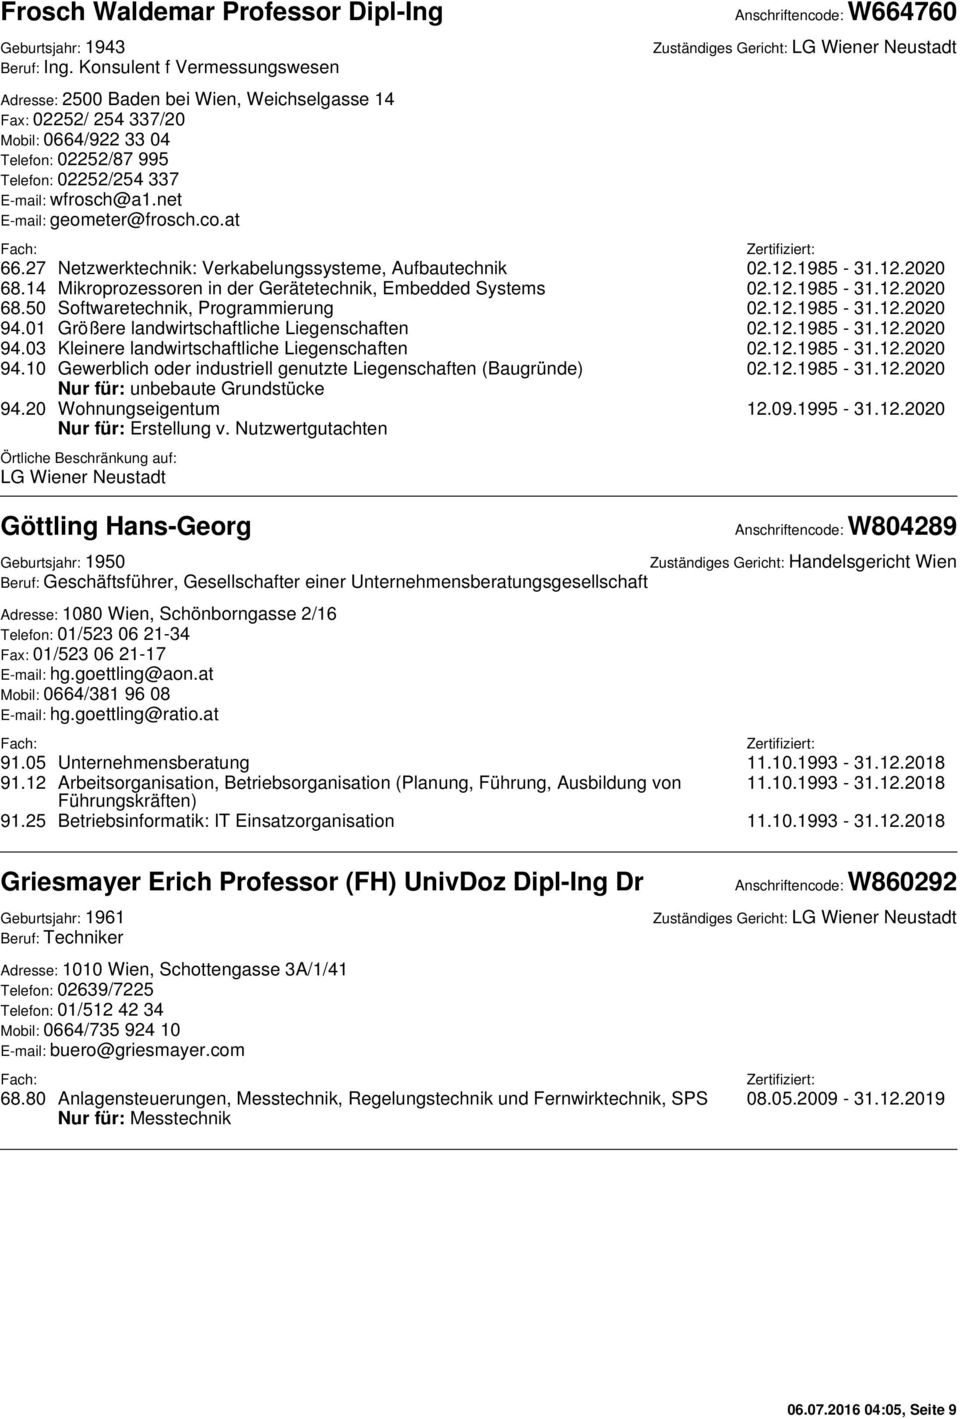 net E-mail: geometer@frosch.co.at Anschriftencode: W664760 Zuständiges Gericht: LG Wiener Neustadt 66.27 Netzwerktechnik: Verkabelungssysteme, Aufbautechnik 02.12.1985-31.12.2020 68.